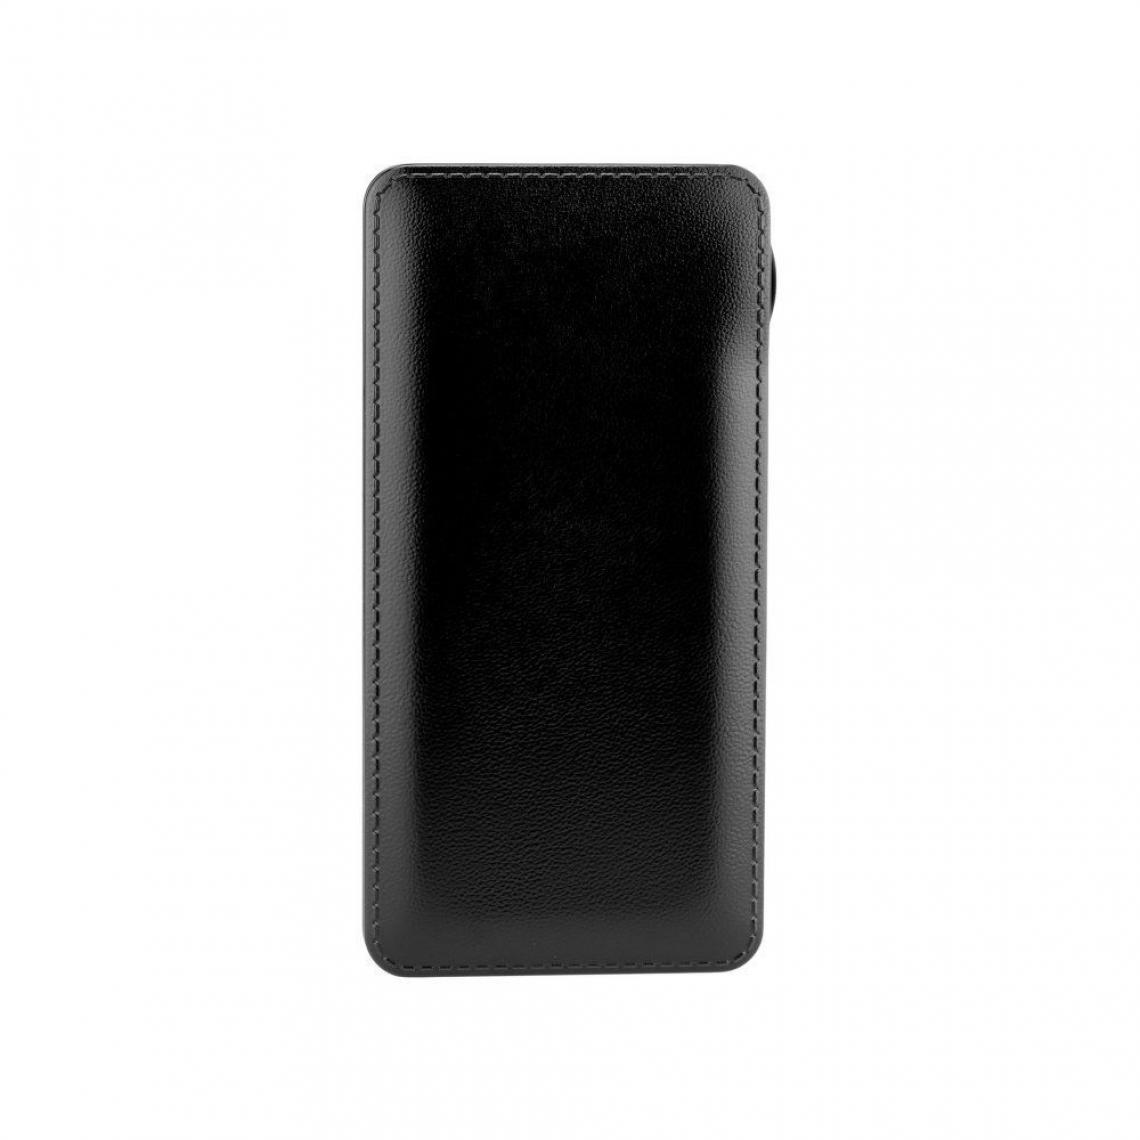 Ozzzo - Chargeur batterie externe 30000 mAh powerbank ozzzo noir pour Huawei Honor Tab 5 8.0 Wi-Fi - Autres accessoires smartphone